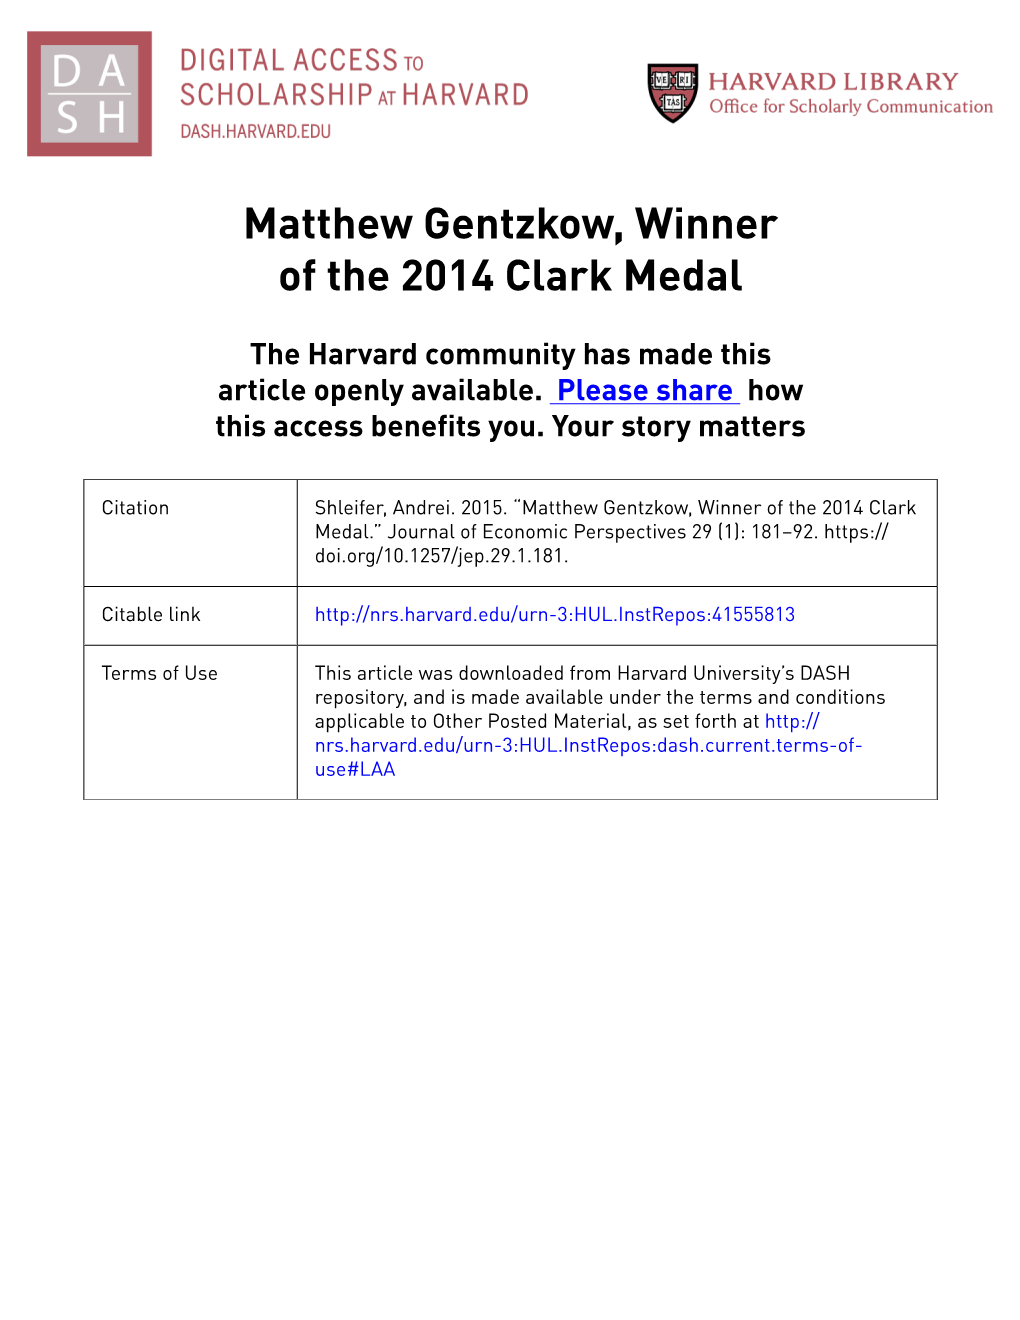 Matthew Gentzkow, Winner of the 2014 Clark Medal